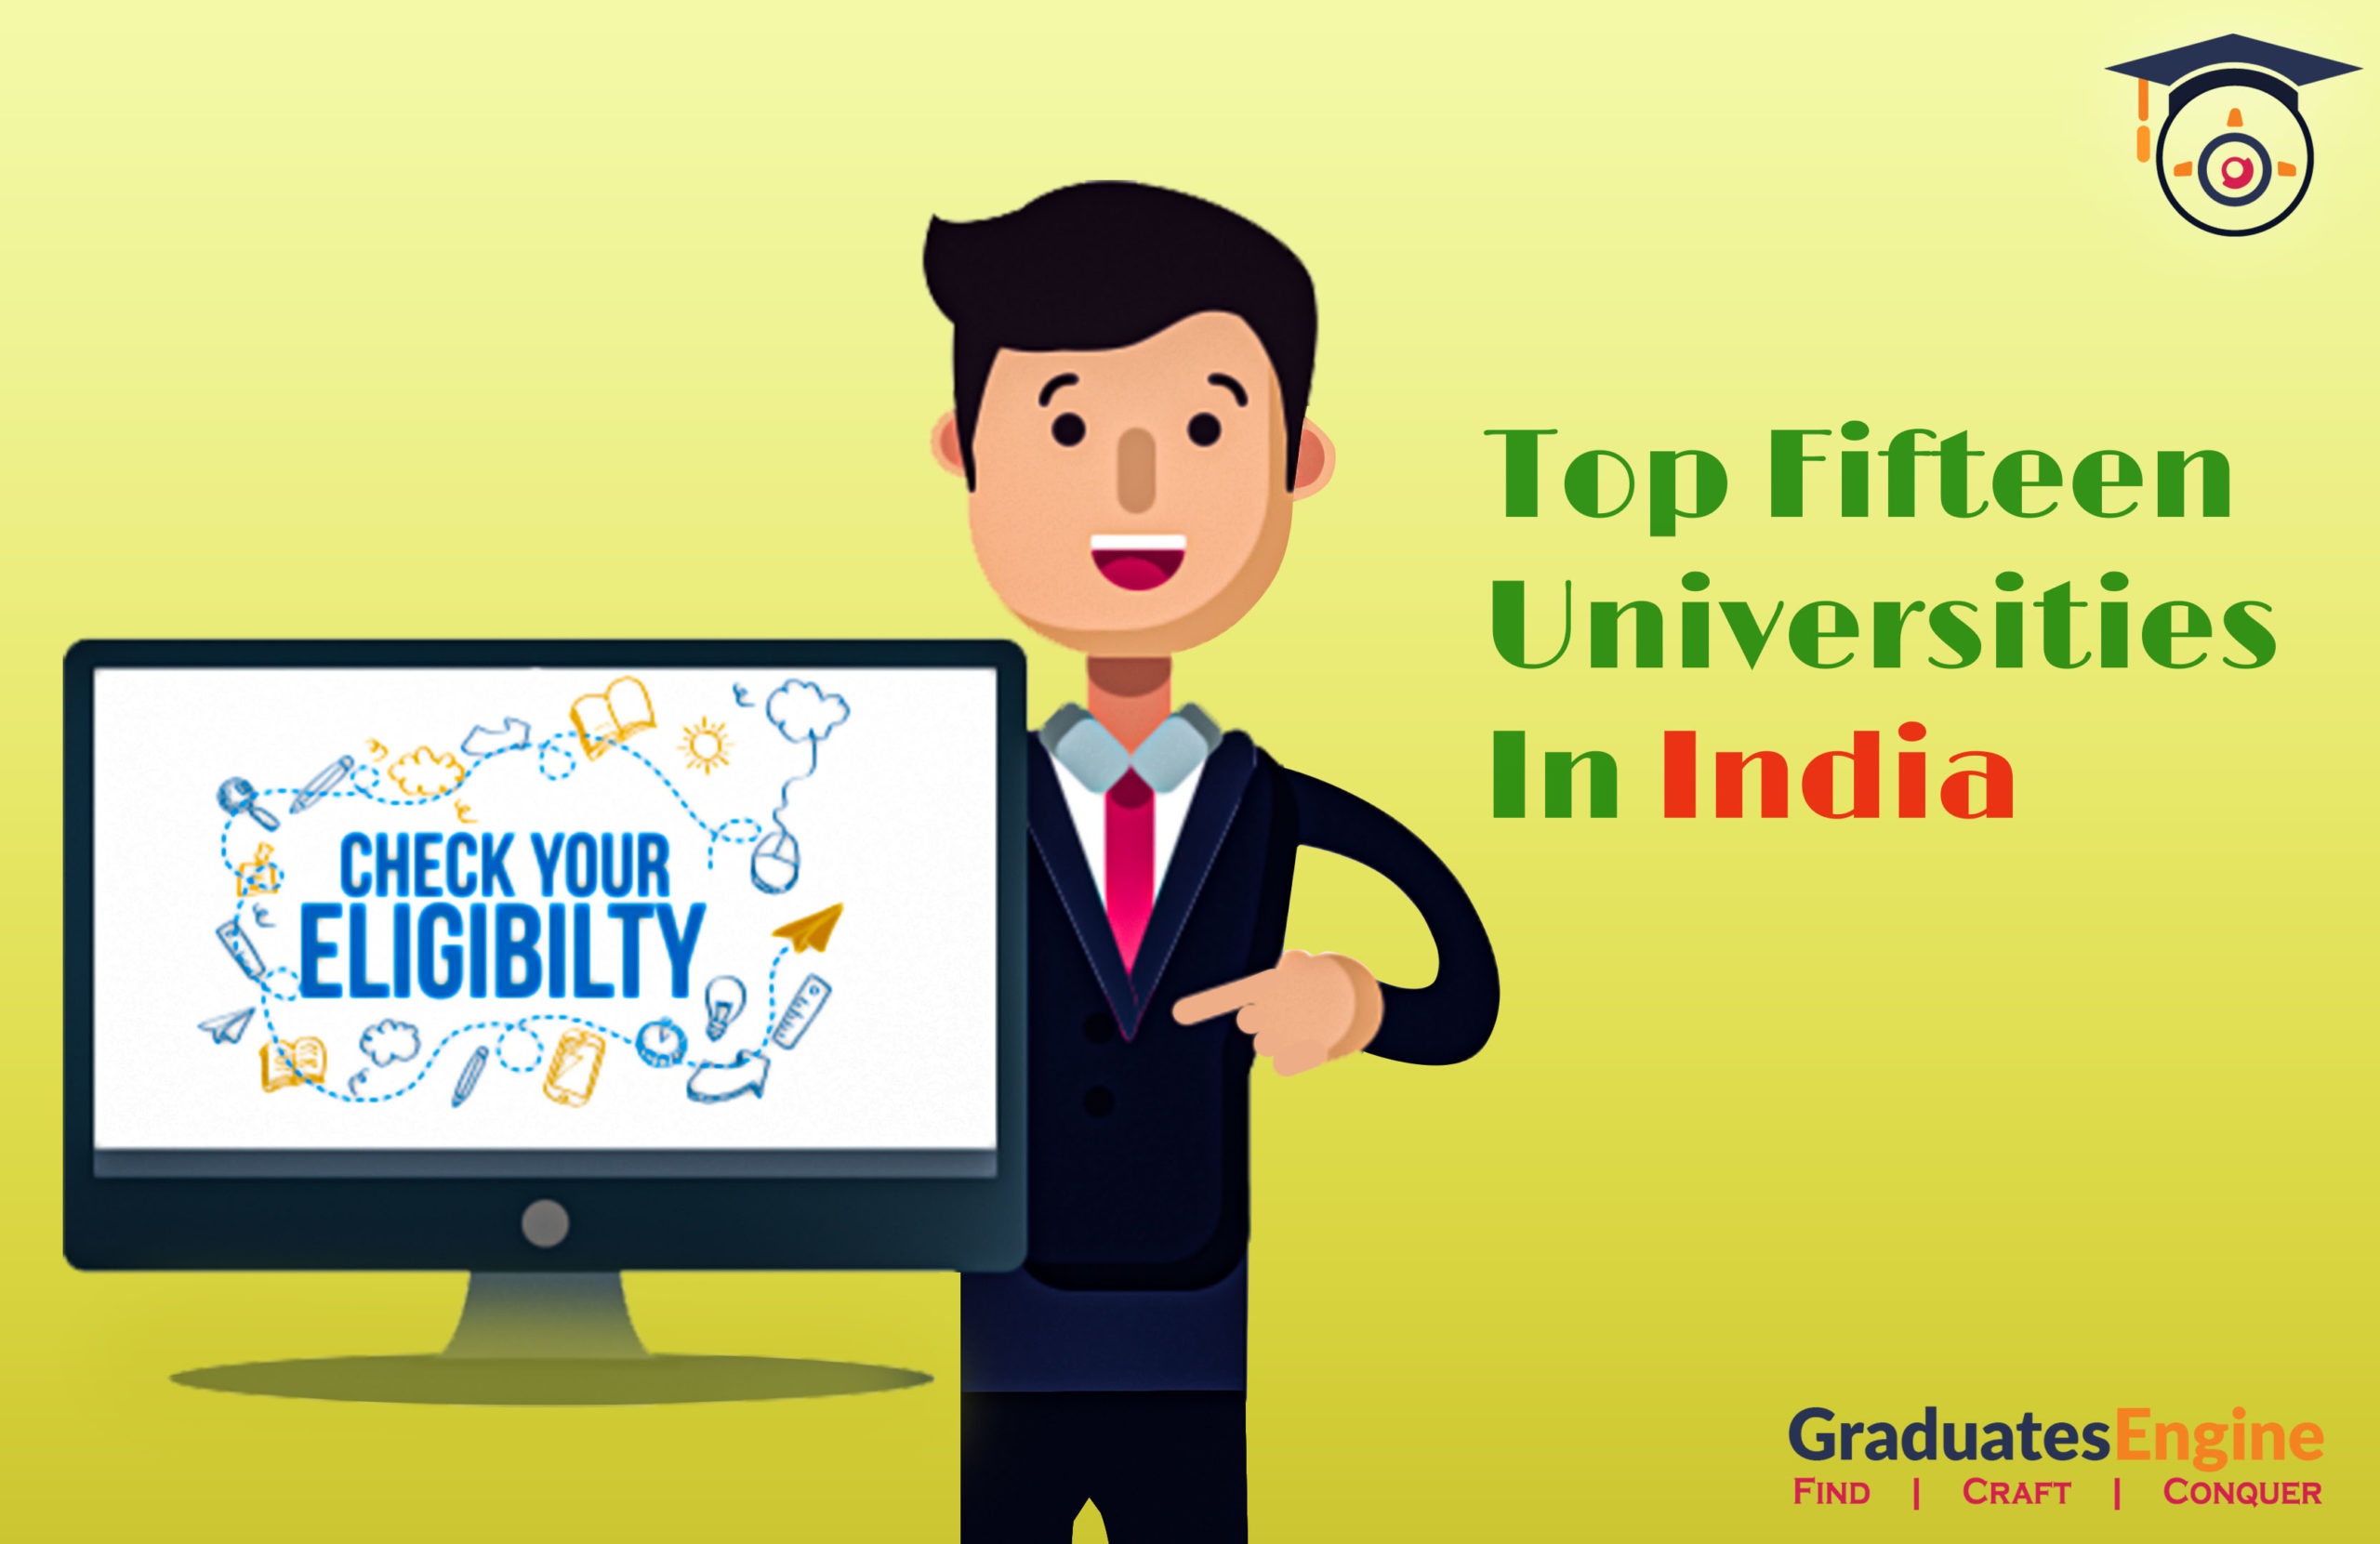 Top Fifteen Universities In India